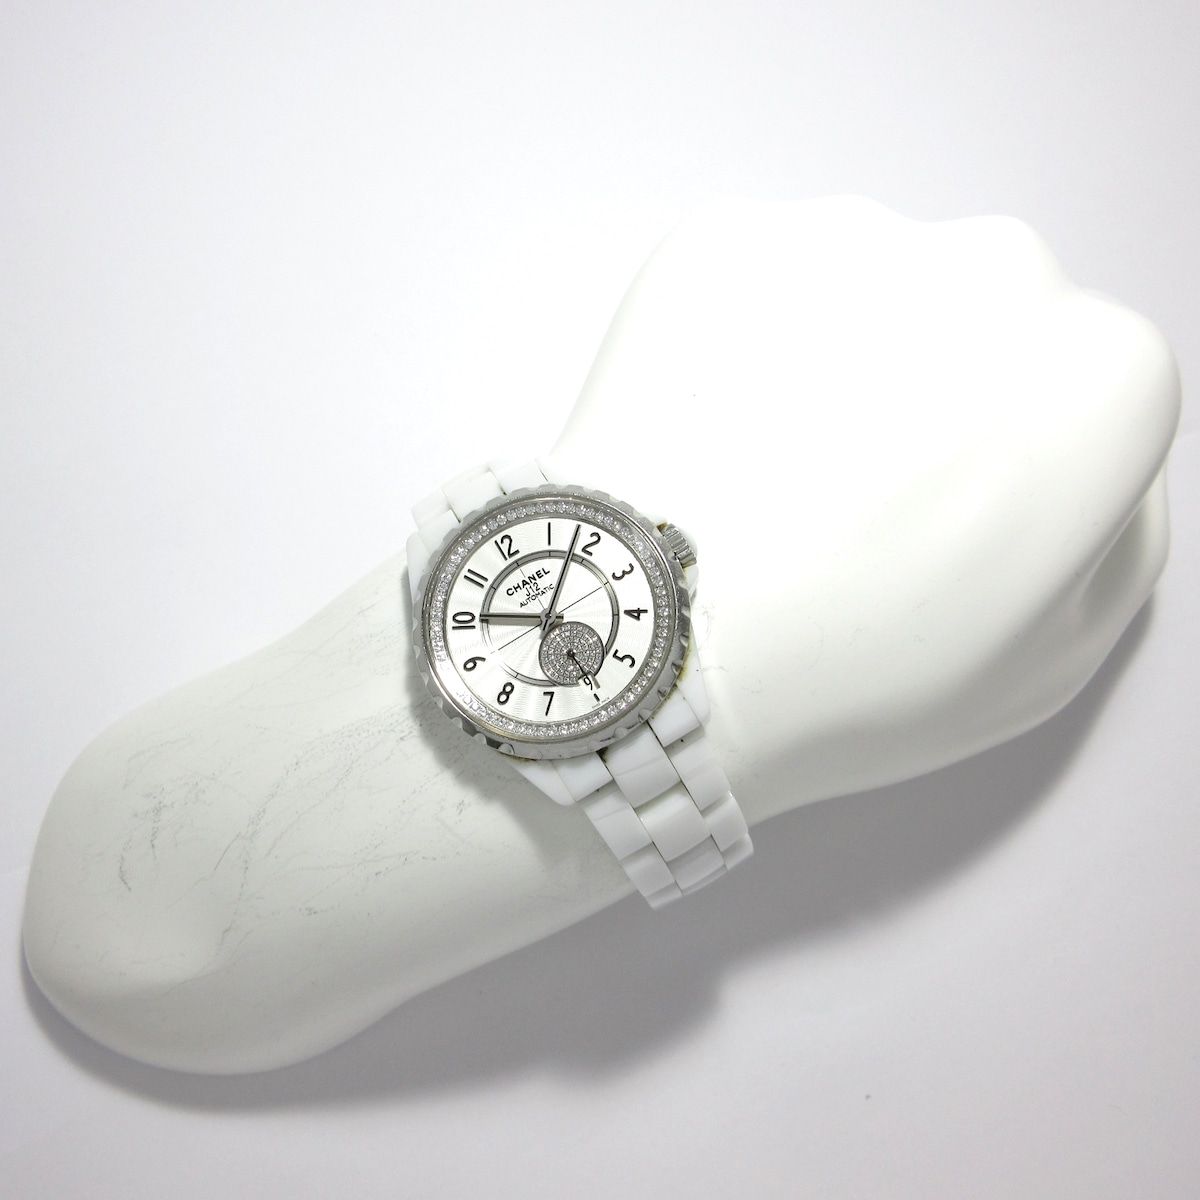 CHANEL(シャネル) 腕時計 J12 H3841 ボーイズ ホワイトセラミック/ダイヤインナーベゼル/パヴェダイヤ 白